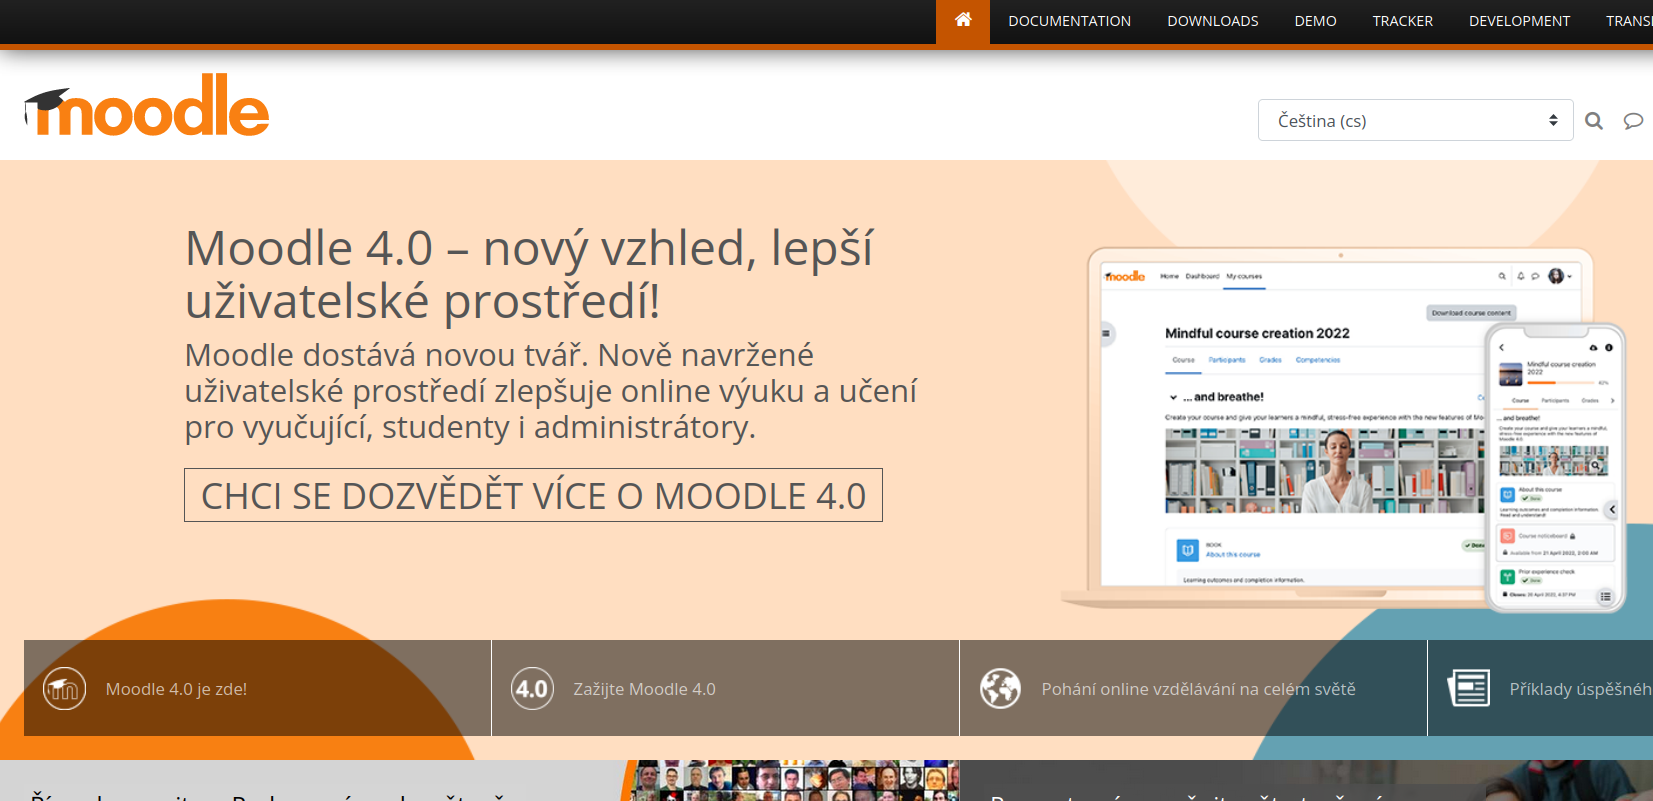 Moodle.org in Czech